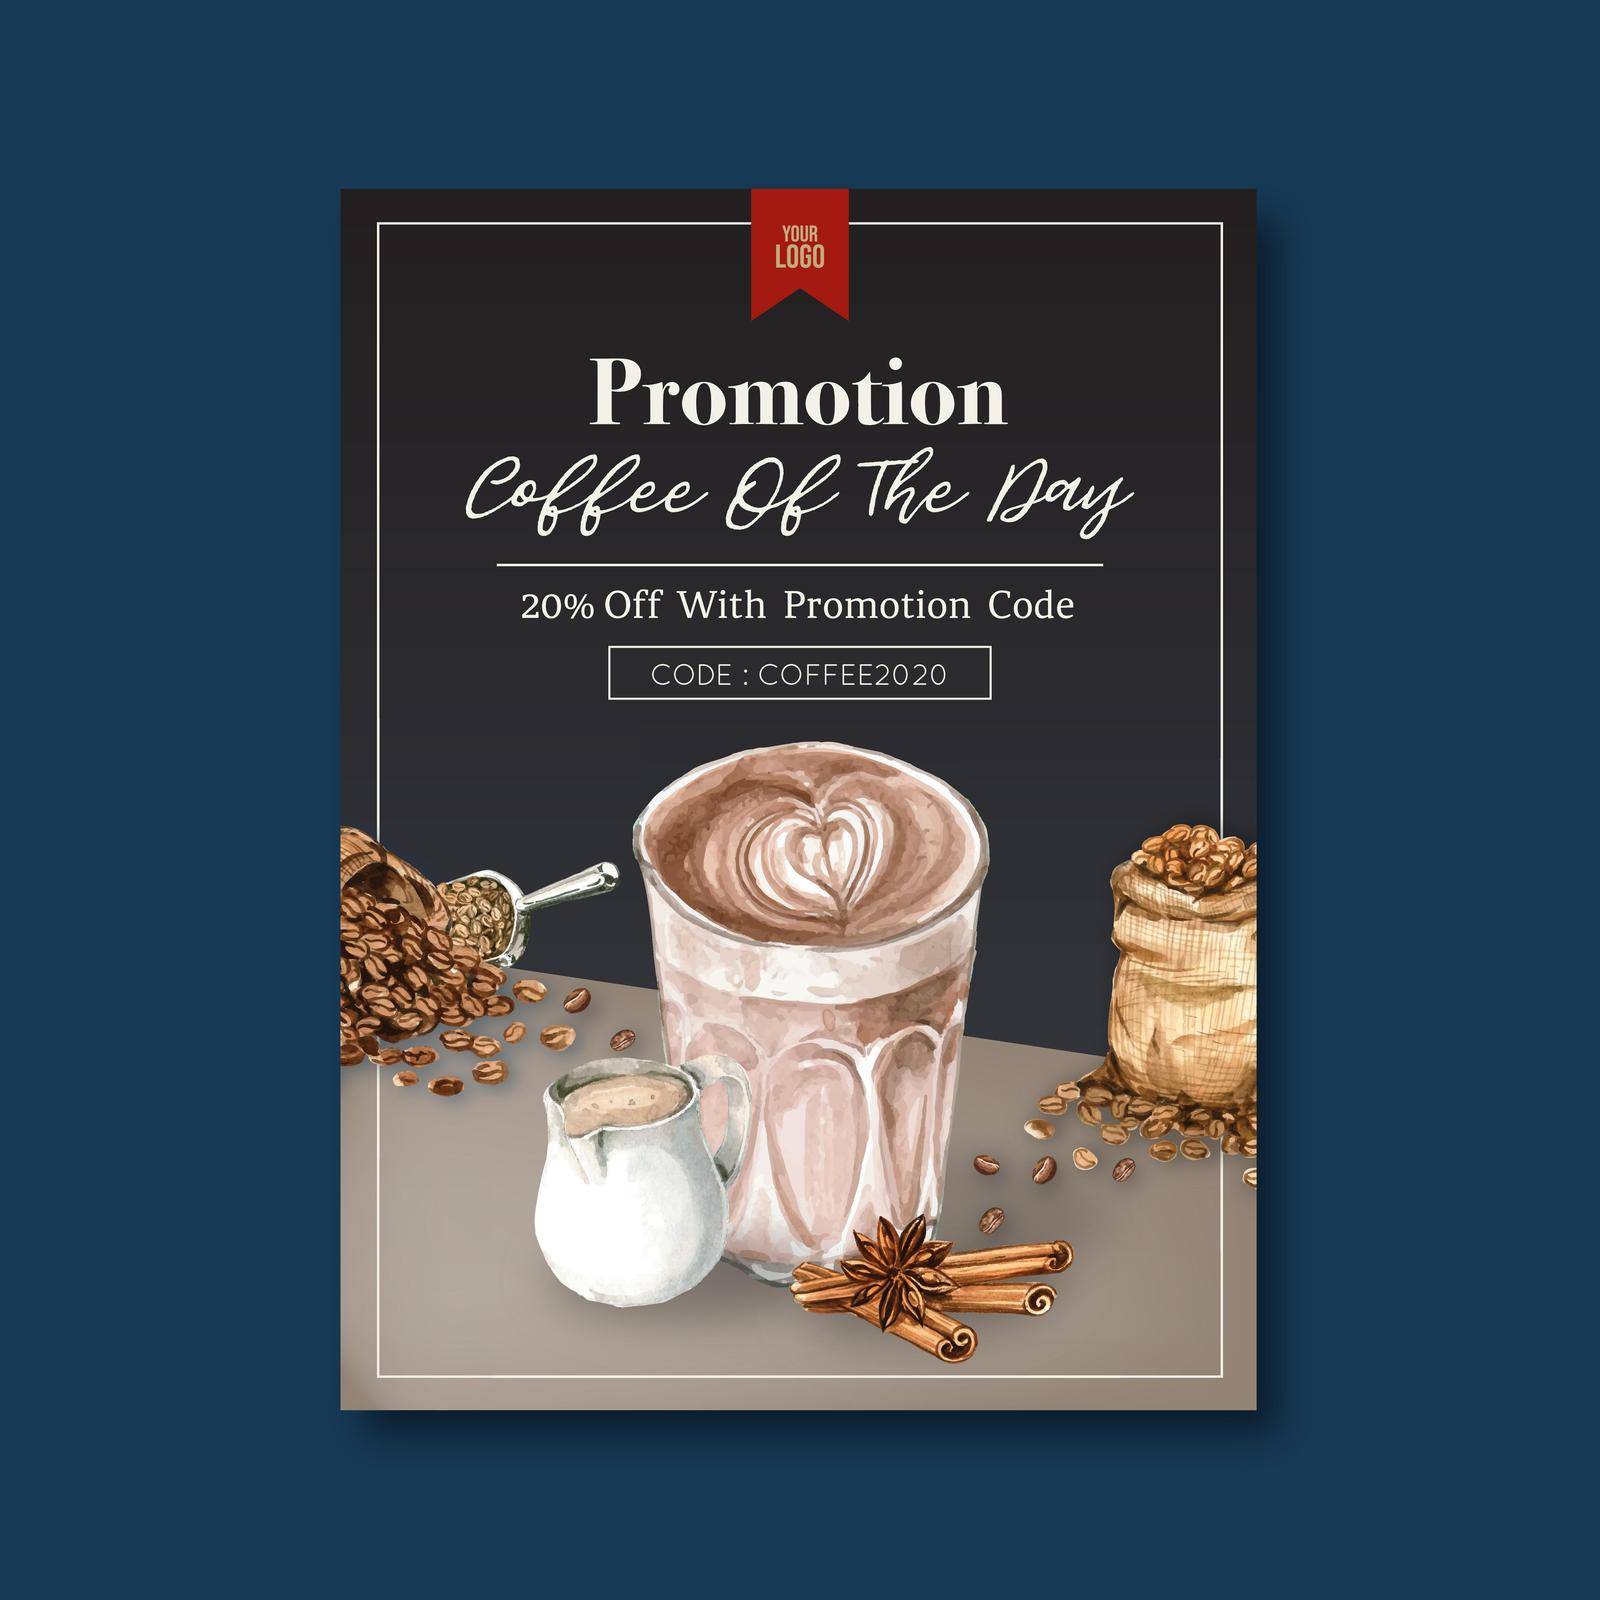 americano ,cappuccino, espresso coffee poster discount, template design, watercolor illustration